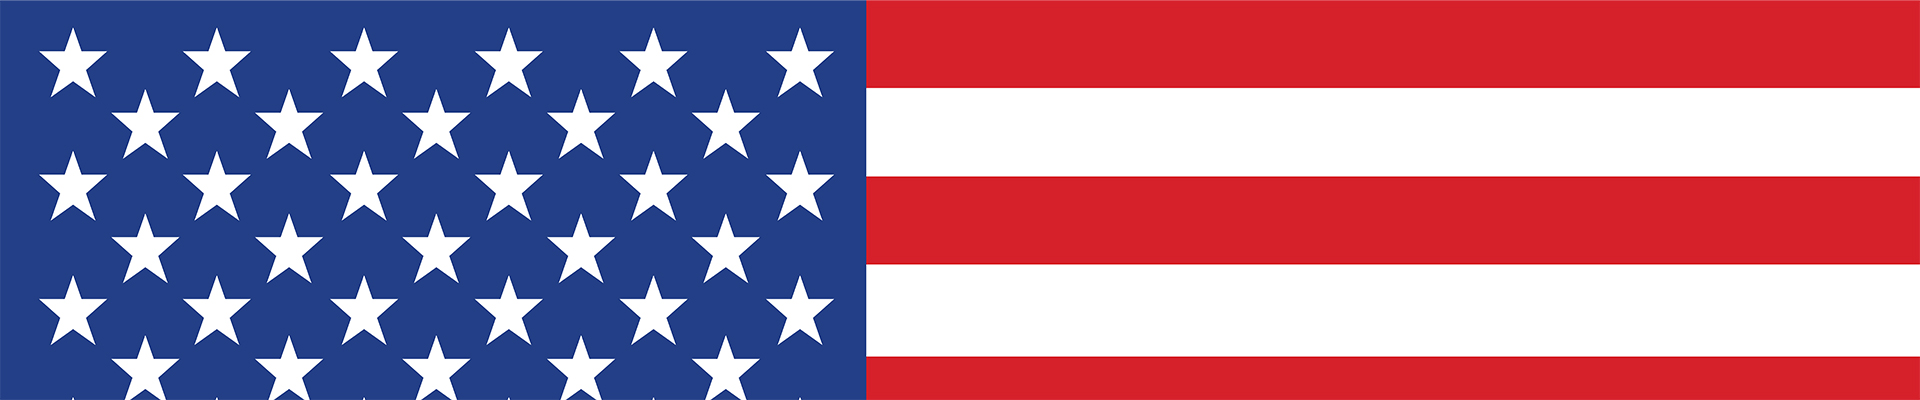 قطعة من علم الولايات المتحدة